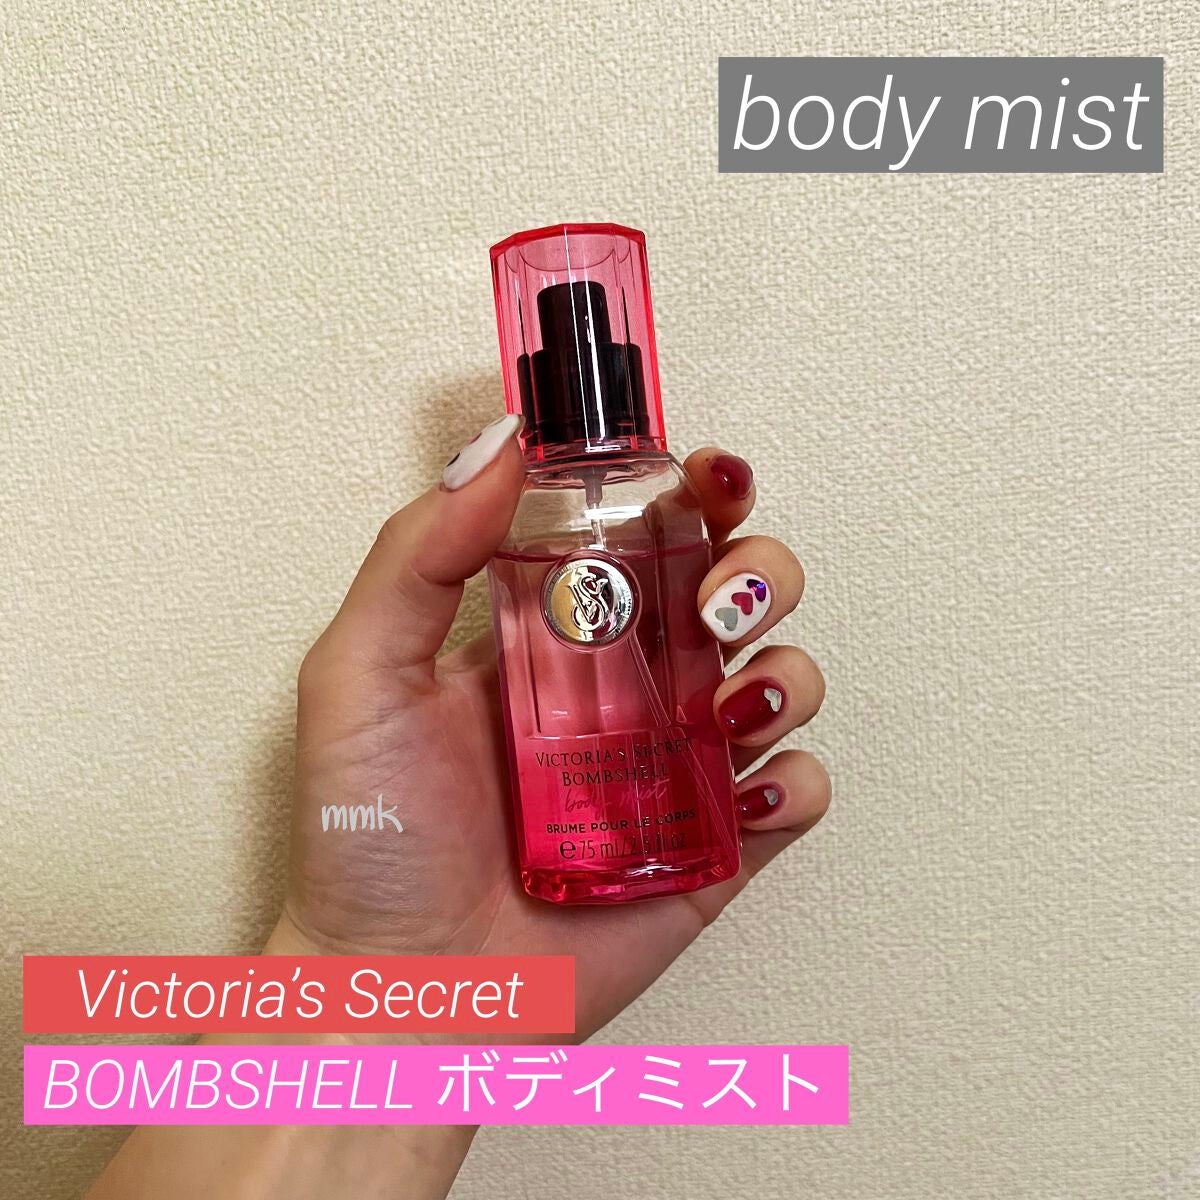 試してみた】ボディミスト Bombshell / victoria's secret